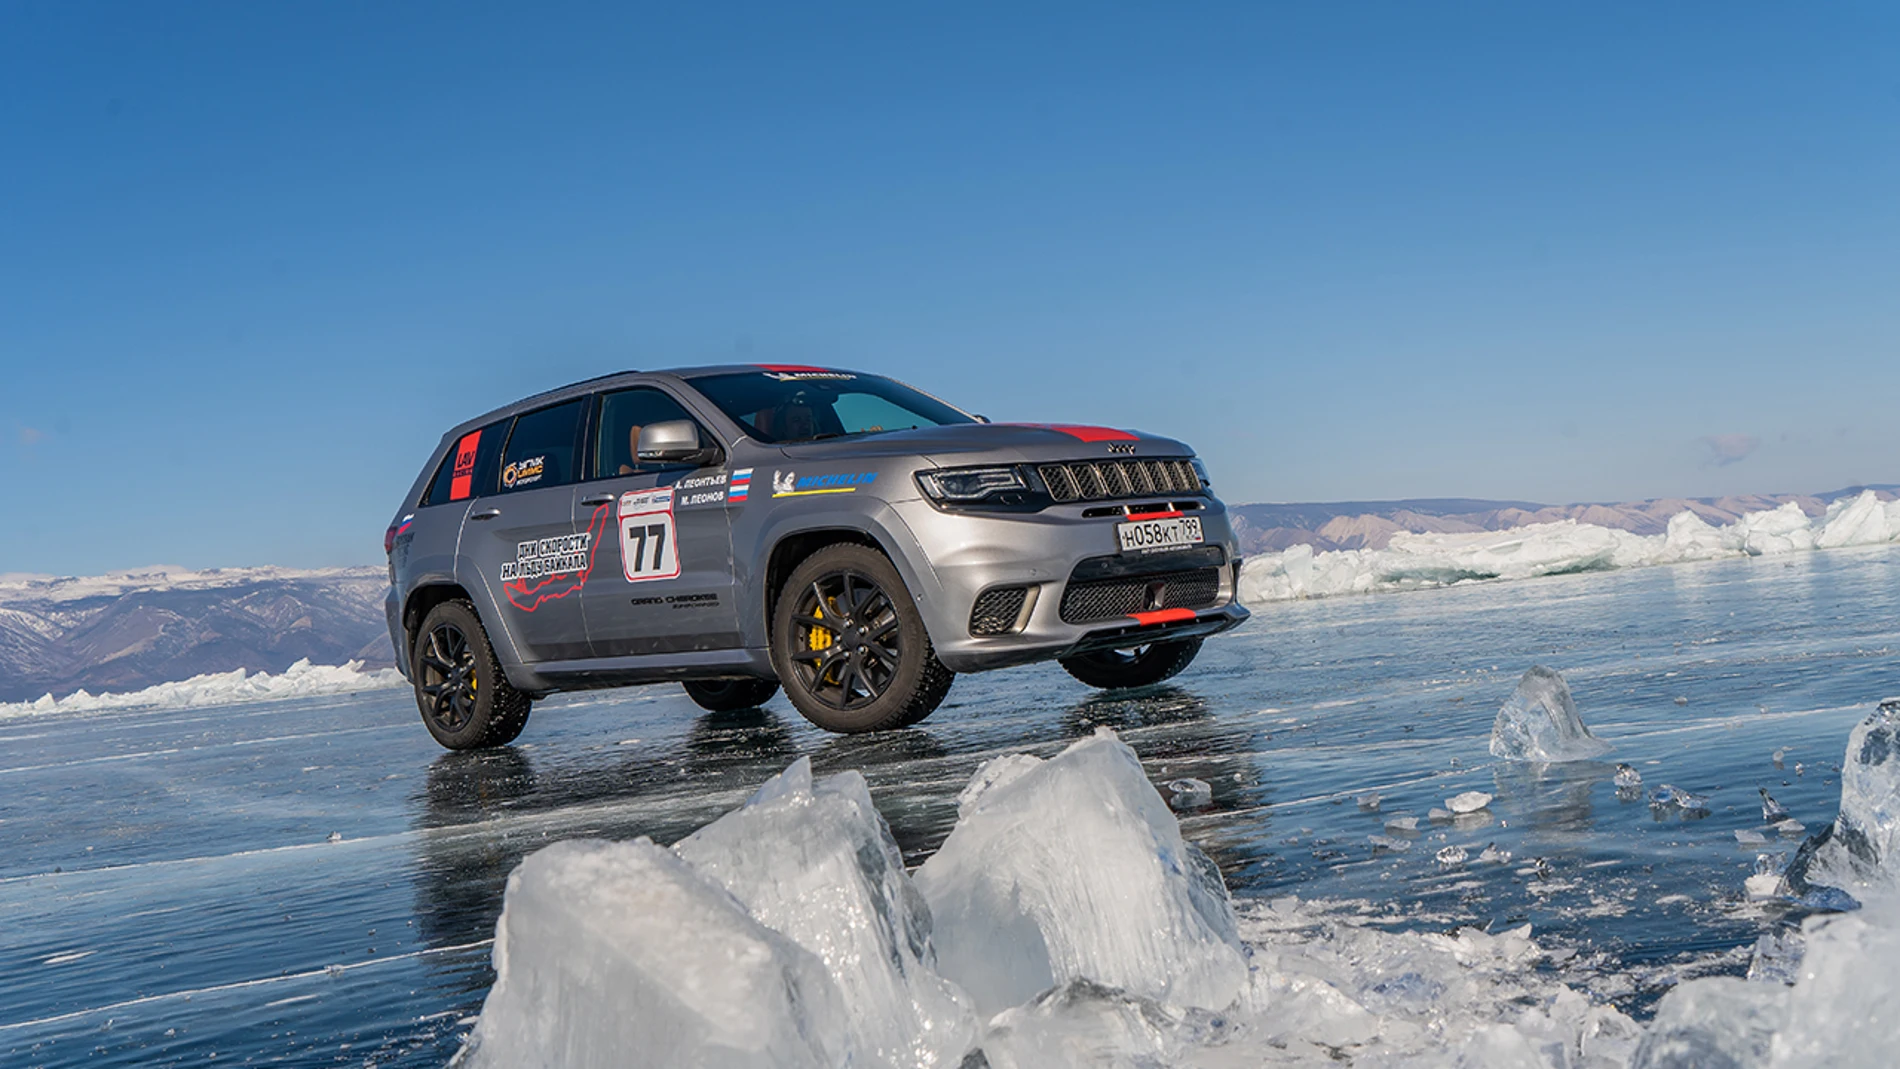 El Jeep Grand Cherokee bate el récord de velocidad sobre el hielo: 280 km/h